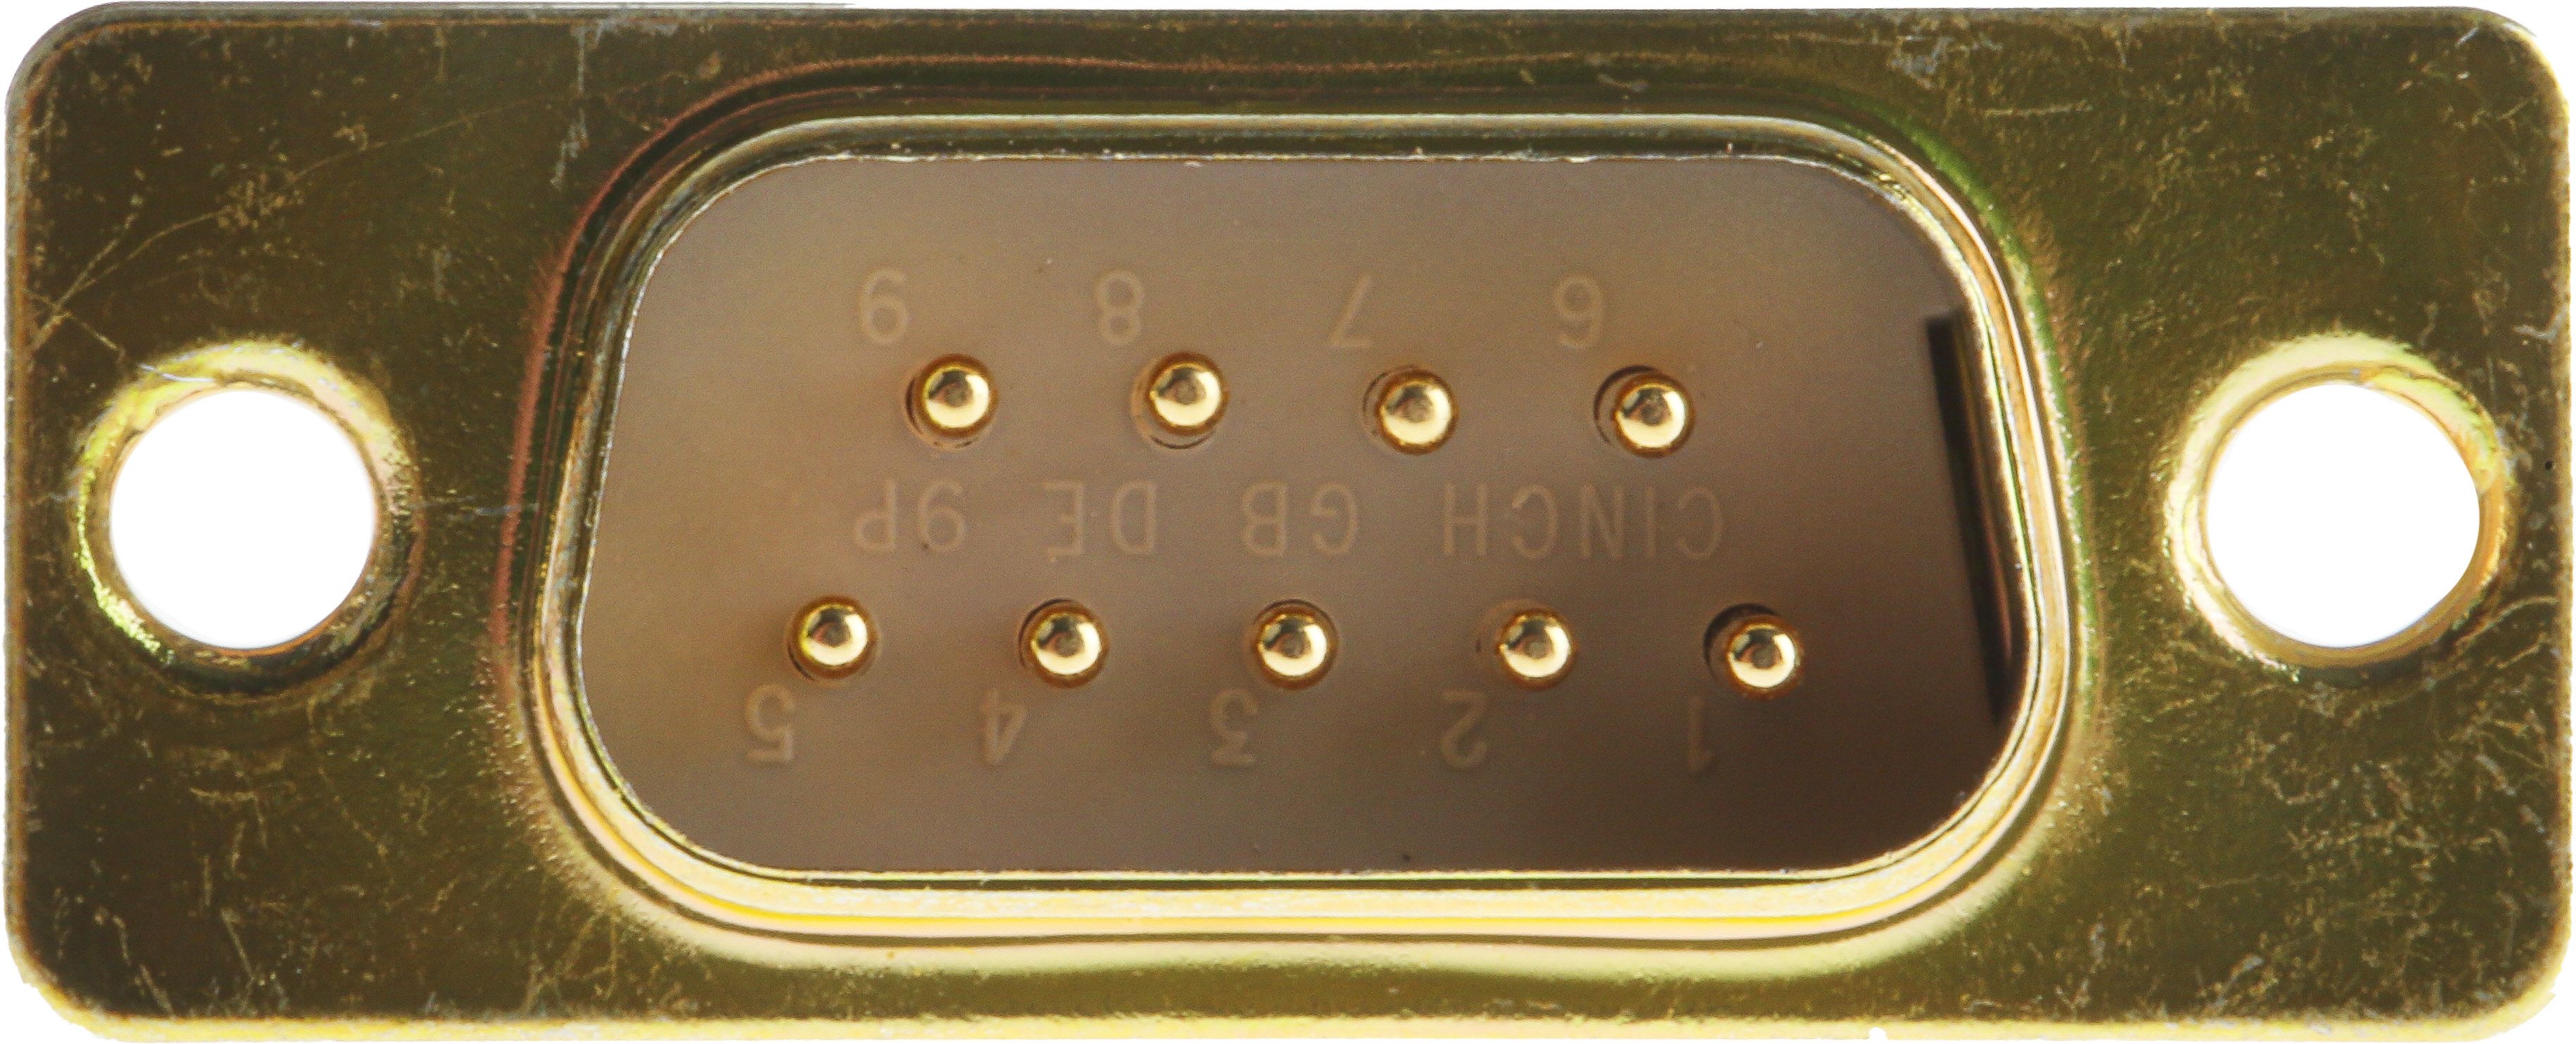 Conector D-sub RS PRO, Recta D-Sub estándar, Montaje en Panel Mount, Macho, Terminación Soldador E, 700.0 V., 5.0A